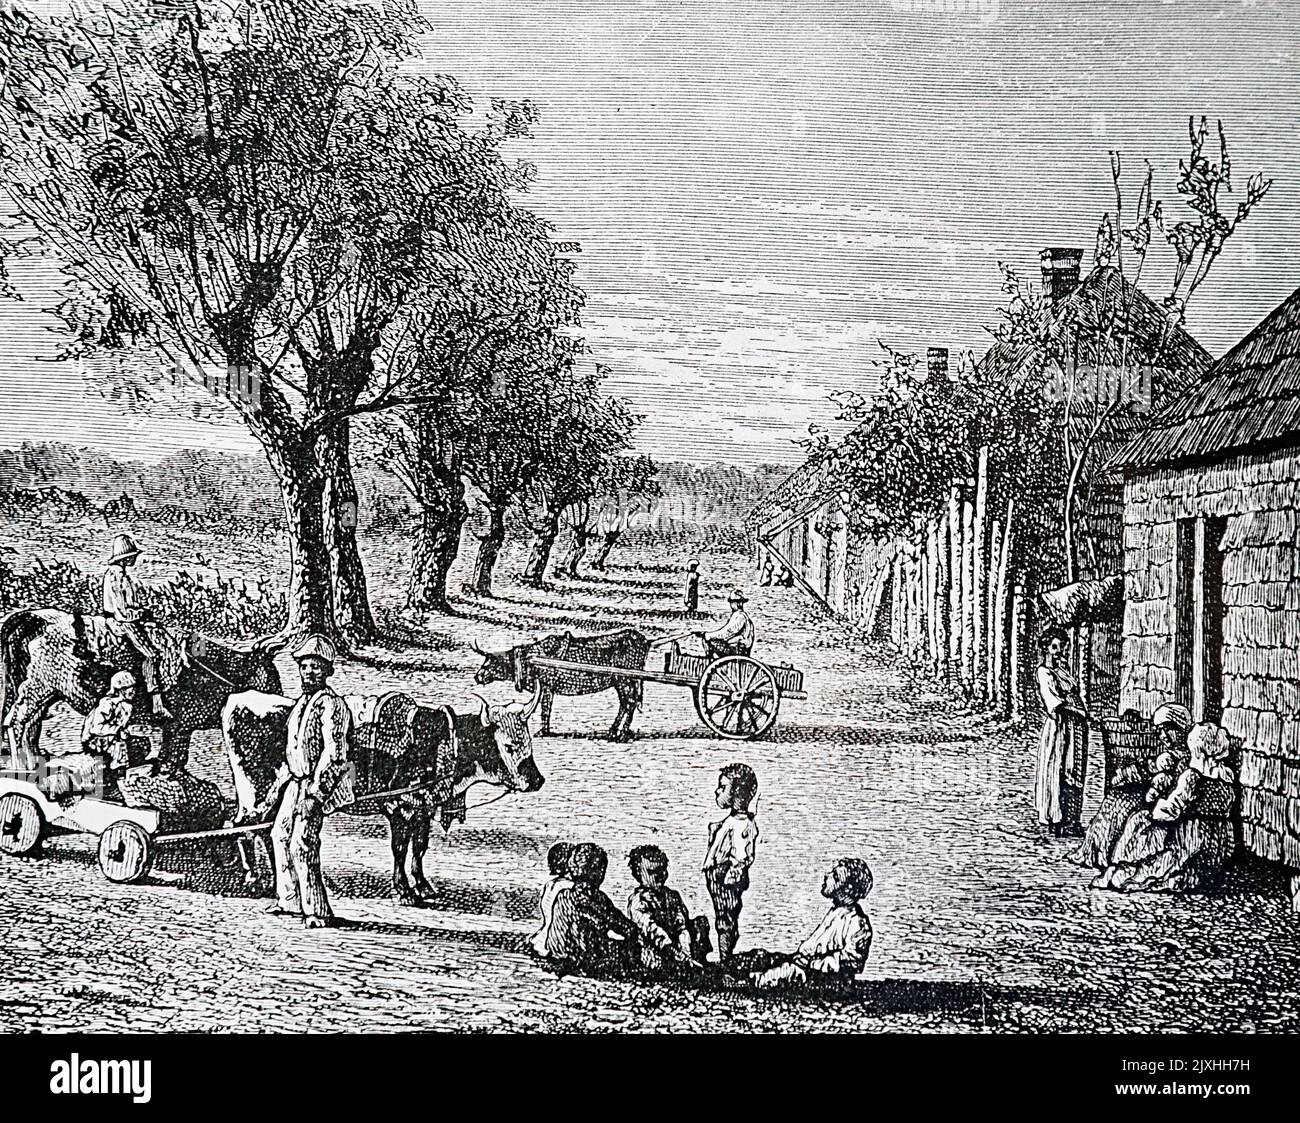 Illustration représentant un village afro-américain en Géorgie, de "les pays du monde" par Robert Brown (1842-1895) un scientifique, explorateur et auteur écossais. Daté du 19th siècle Banque D'Images